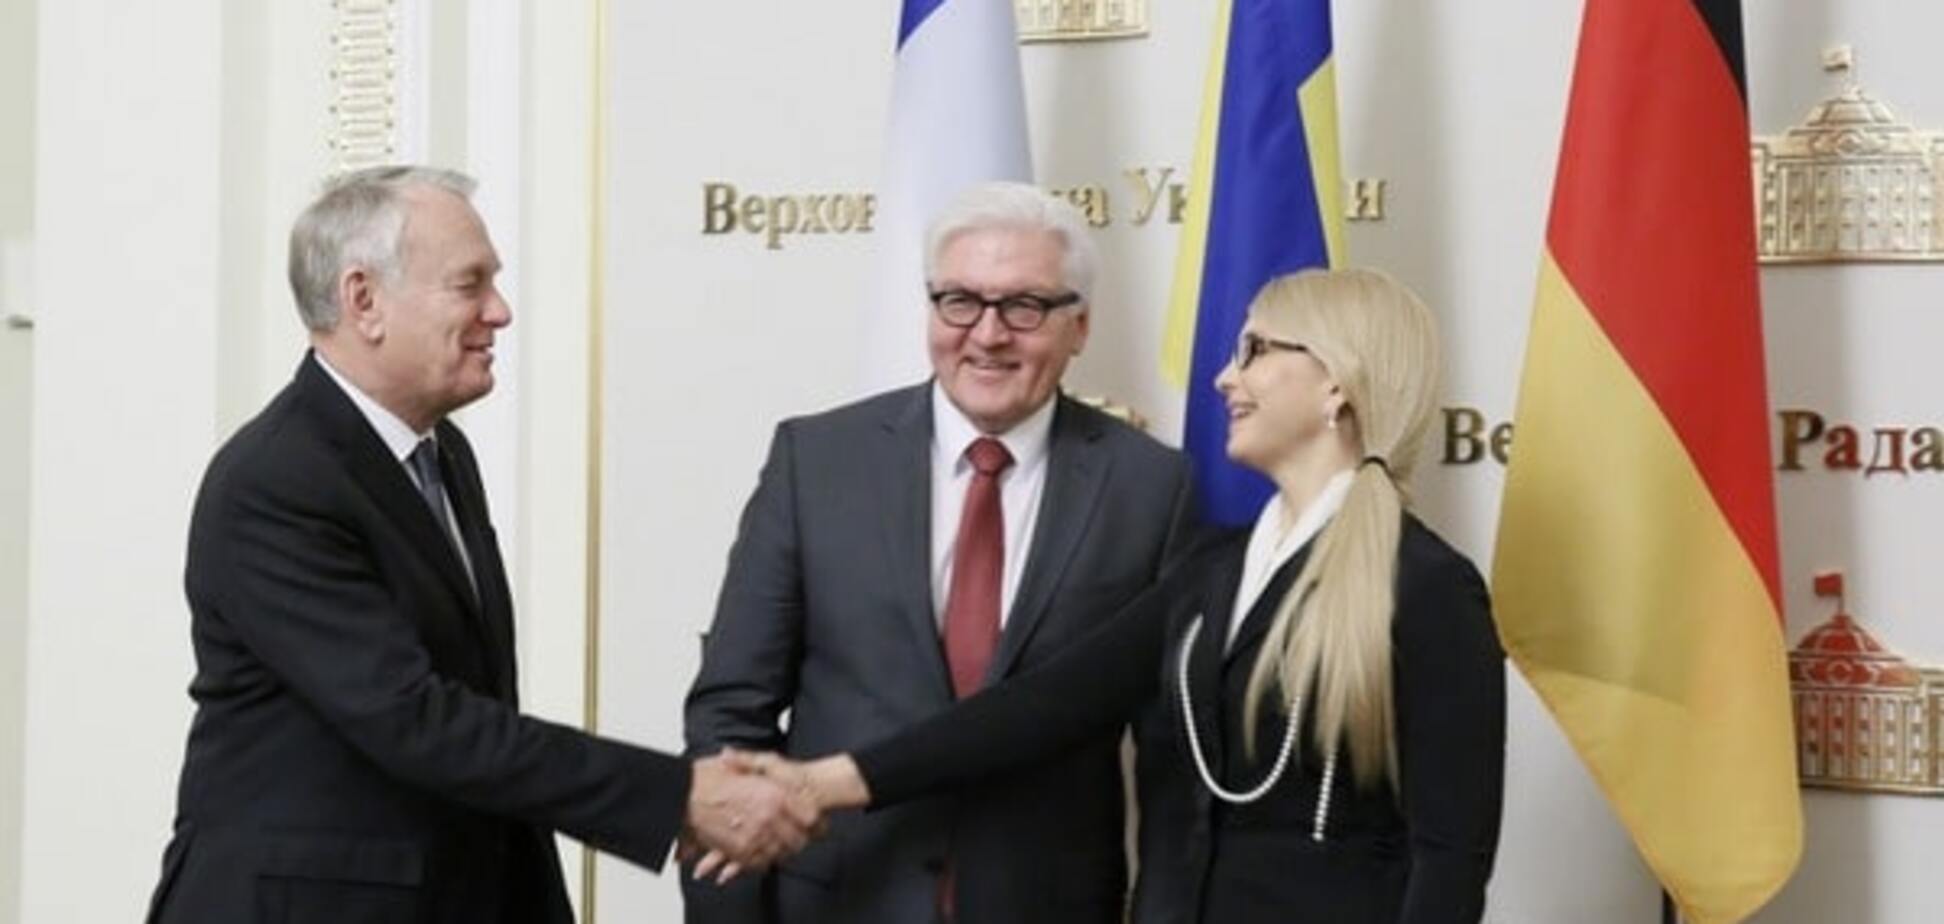 Нужна перезагрузка: Тимошенко рассказала Эро и Штайнмайеру о кризисе в Украине